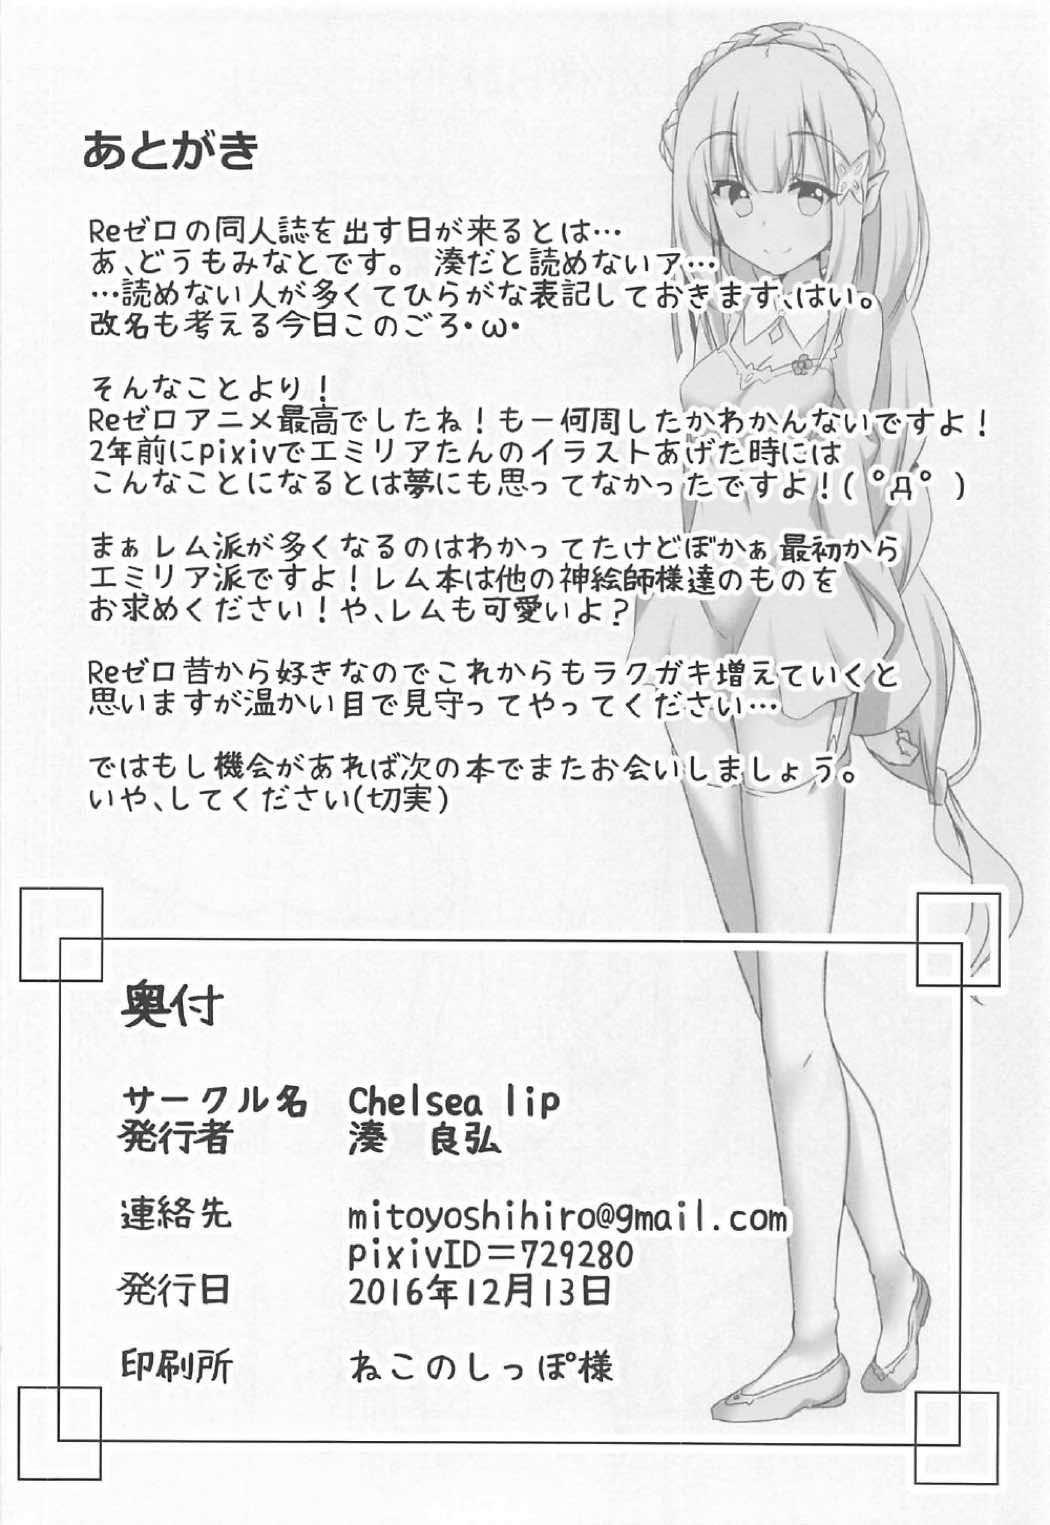 Hotporn Uchi no Heroine Chouzetsu Choroin - Re zero kara hajimeru isekai seikatsu Cut - Page 21